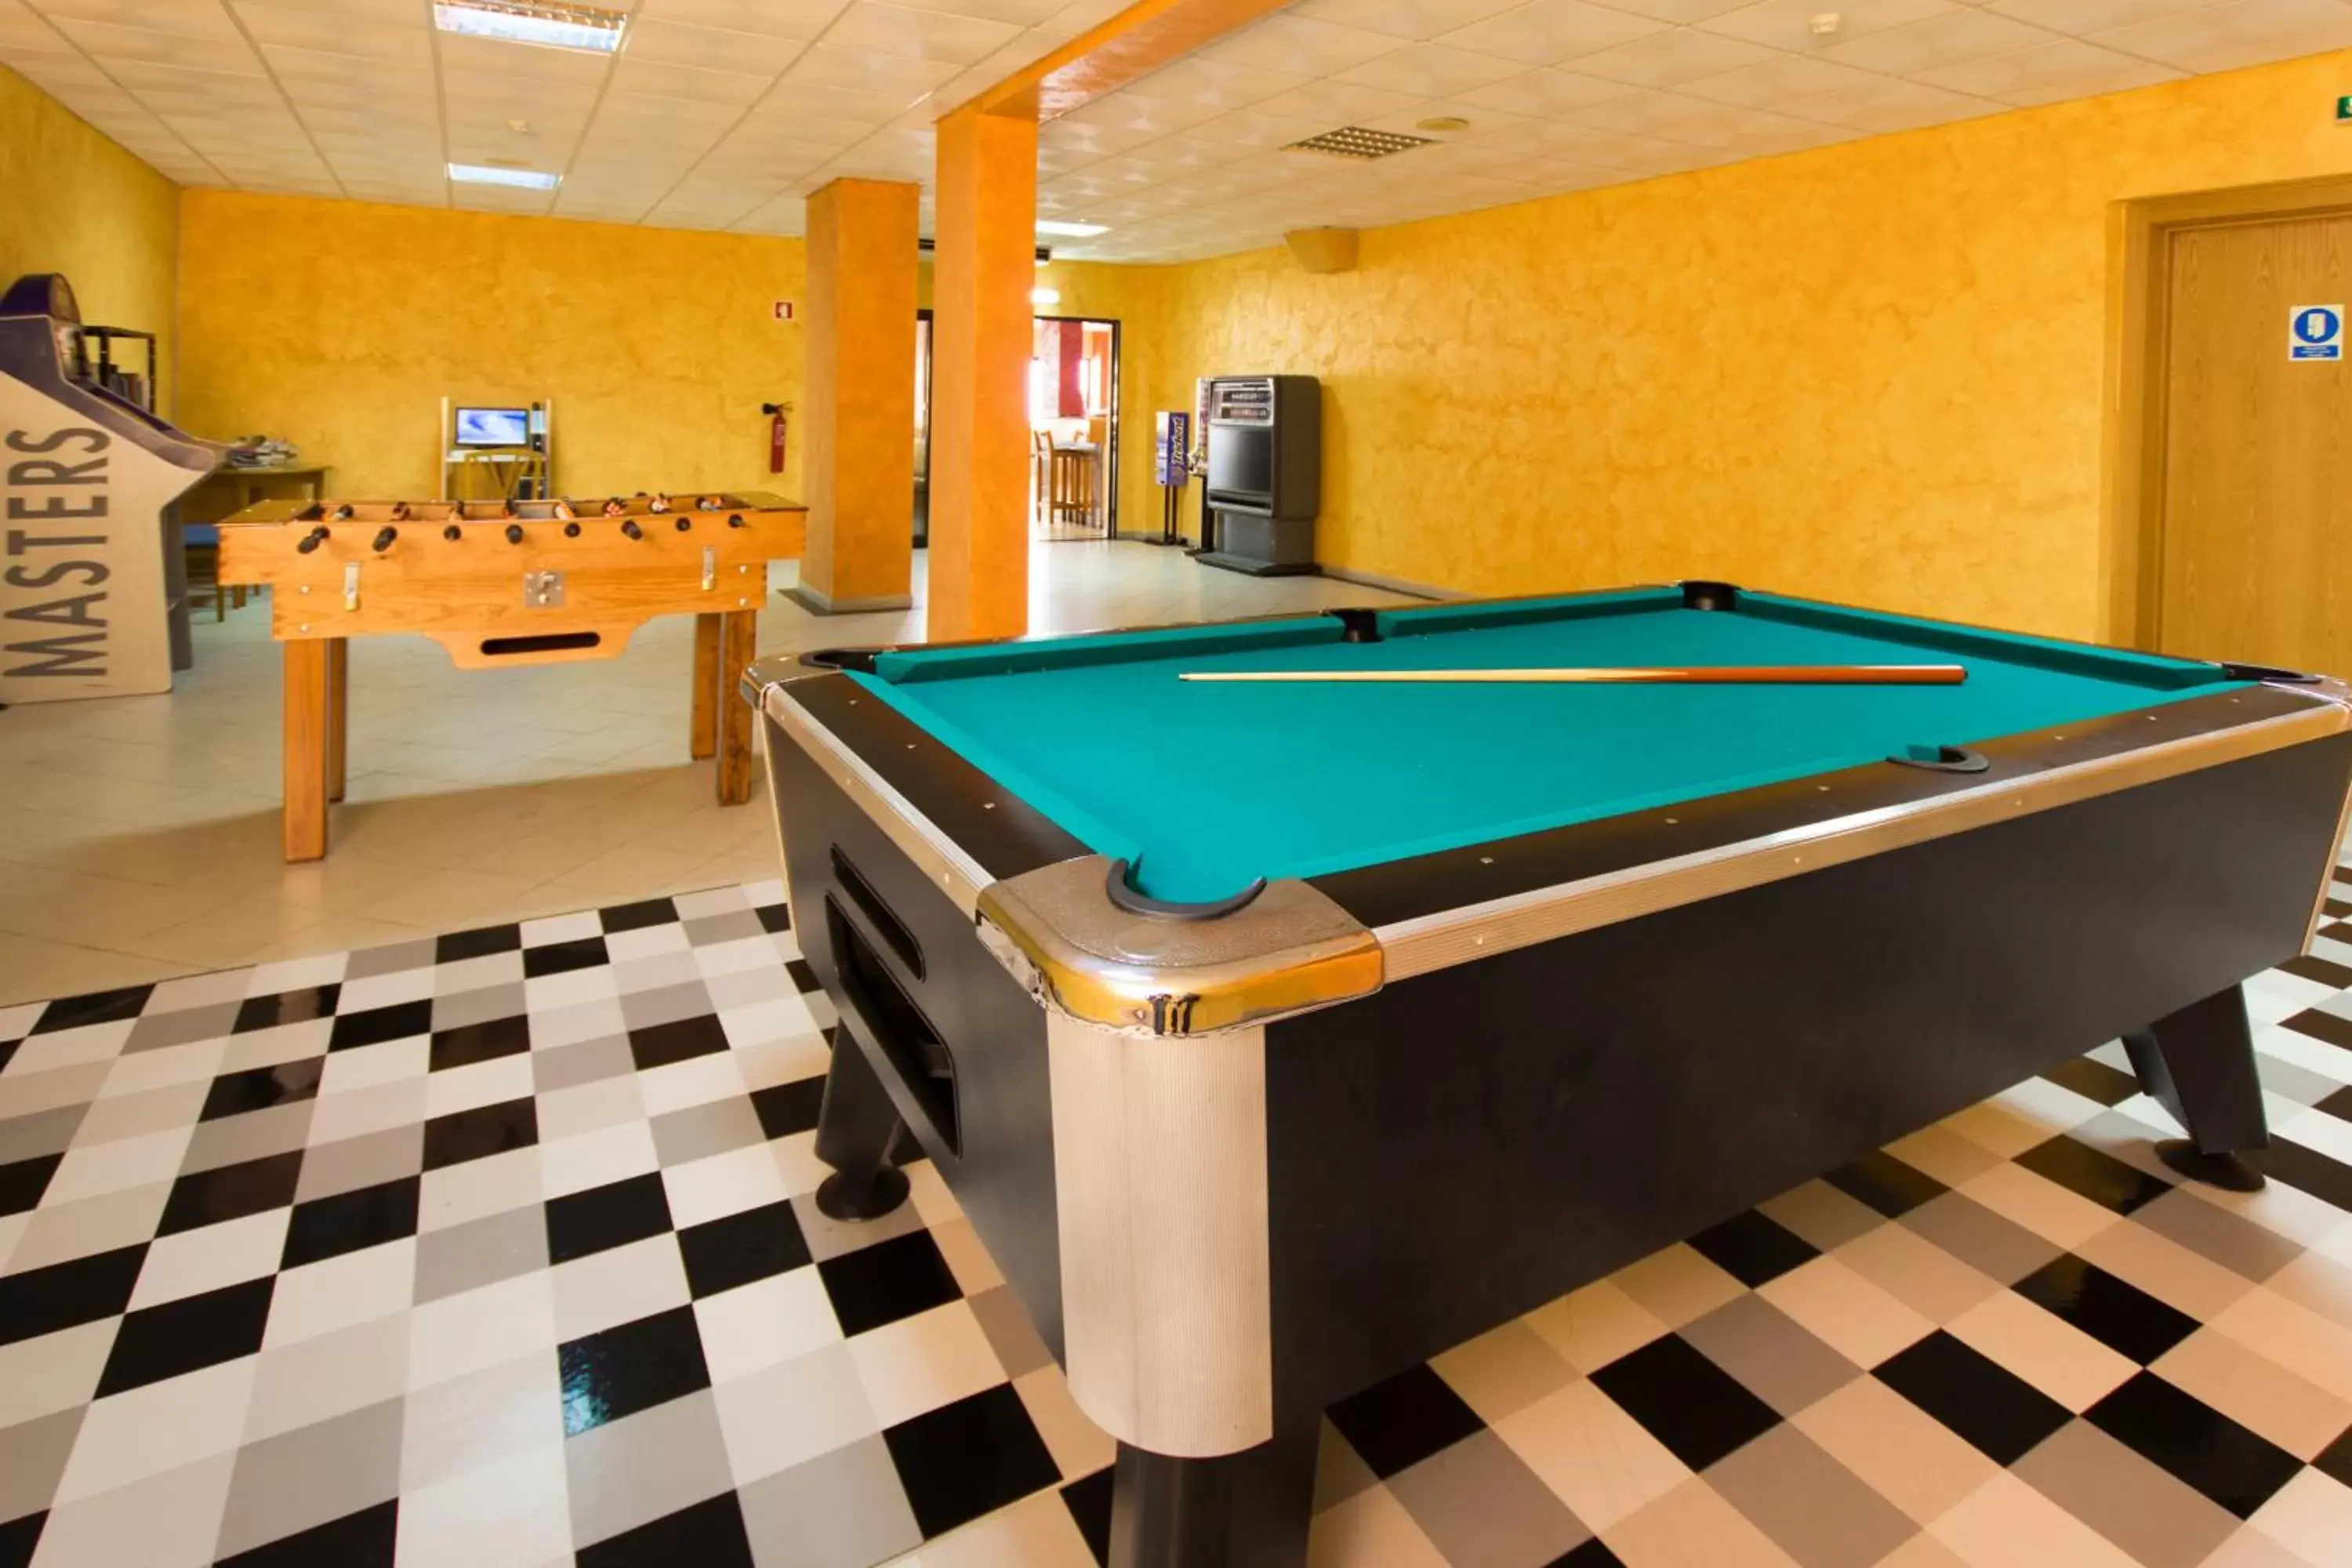 Game Room, Billiards in Aparthotel Paladim & Alagoamar